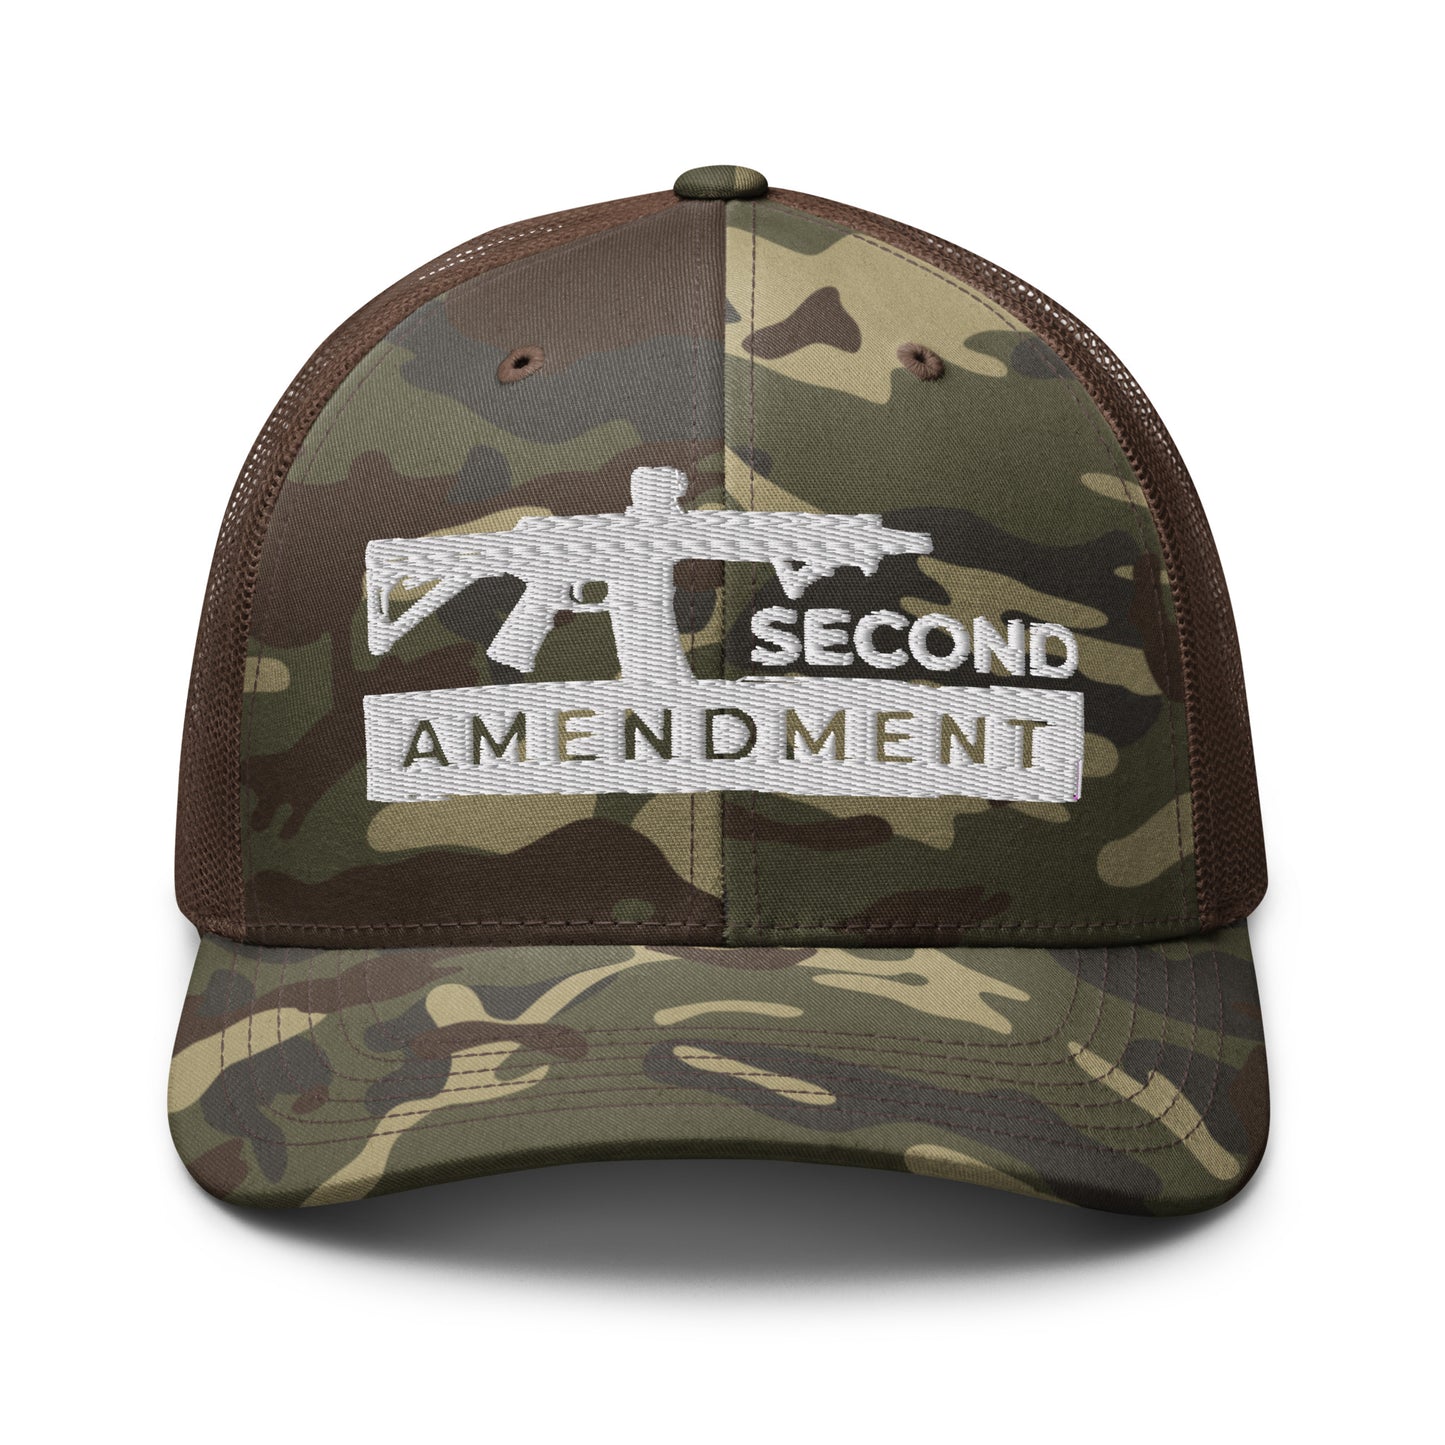 2nd Amendment Camouflage Trucker Hat